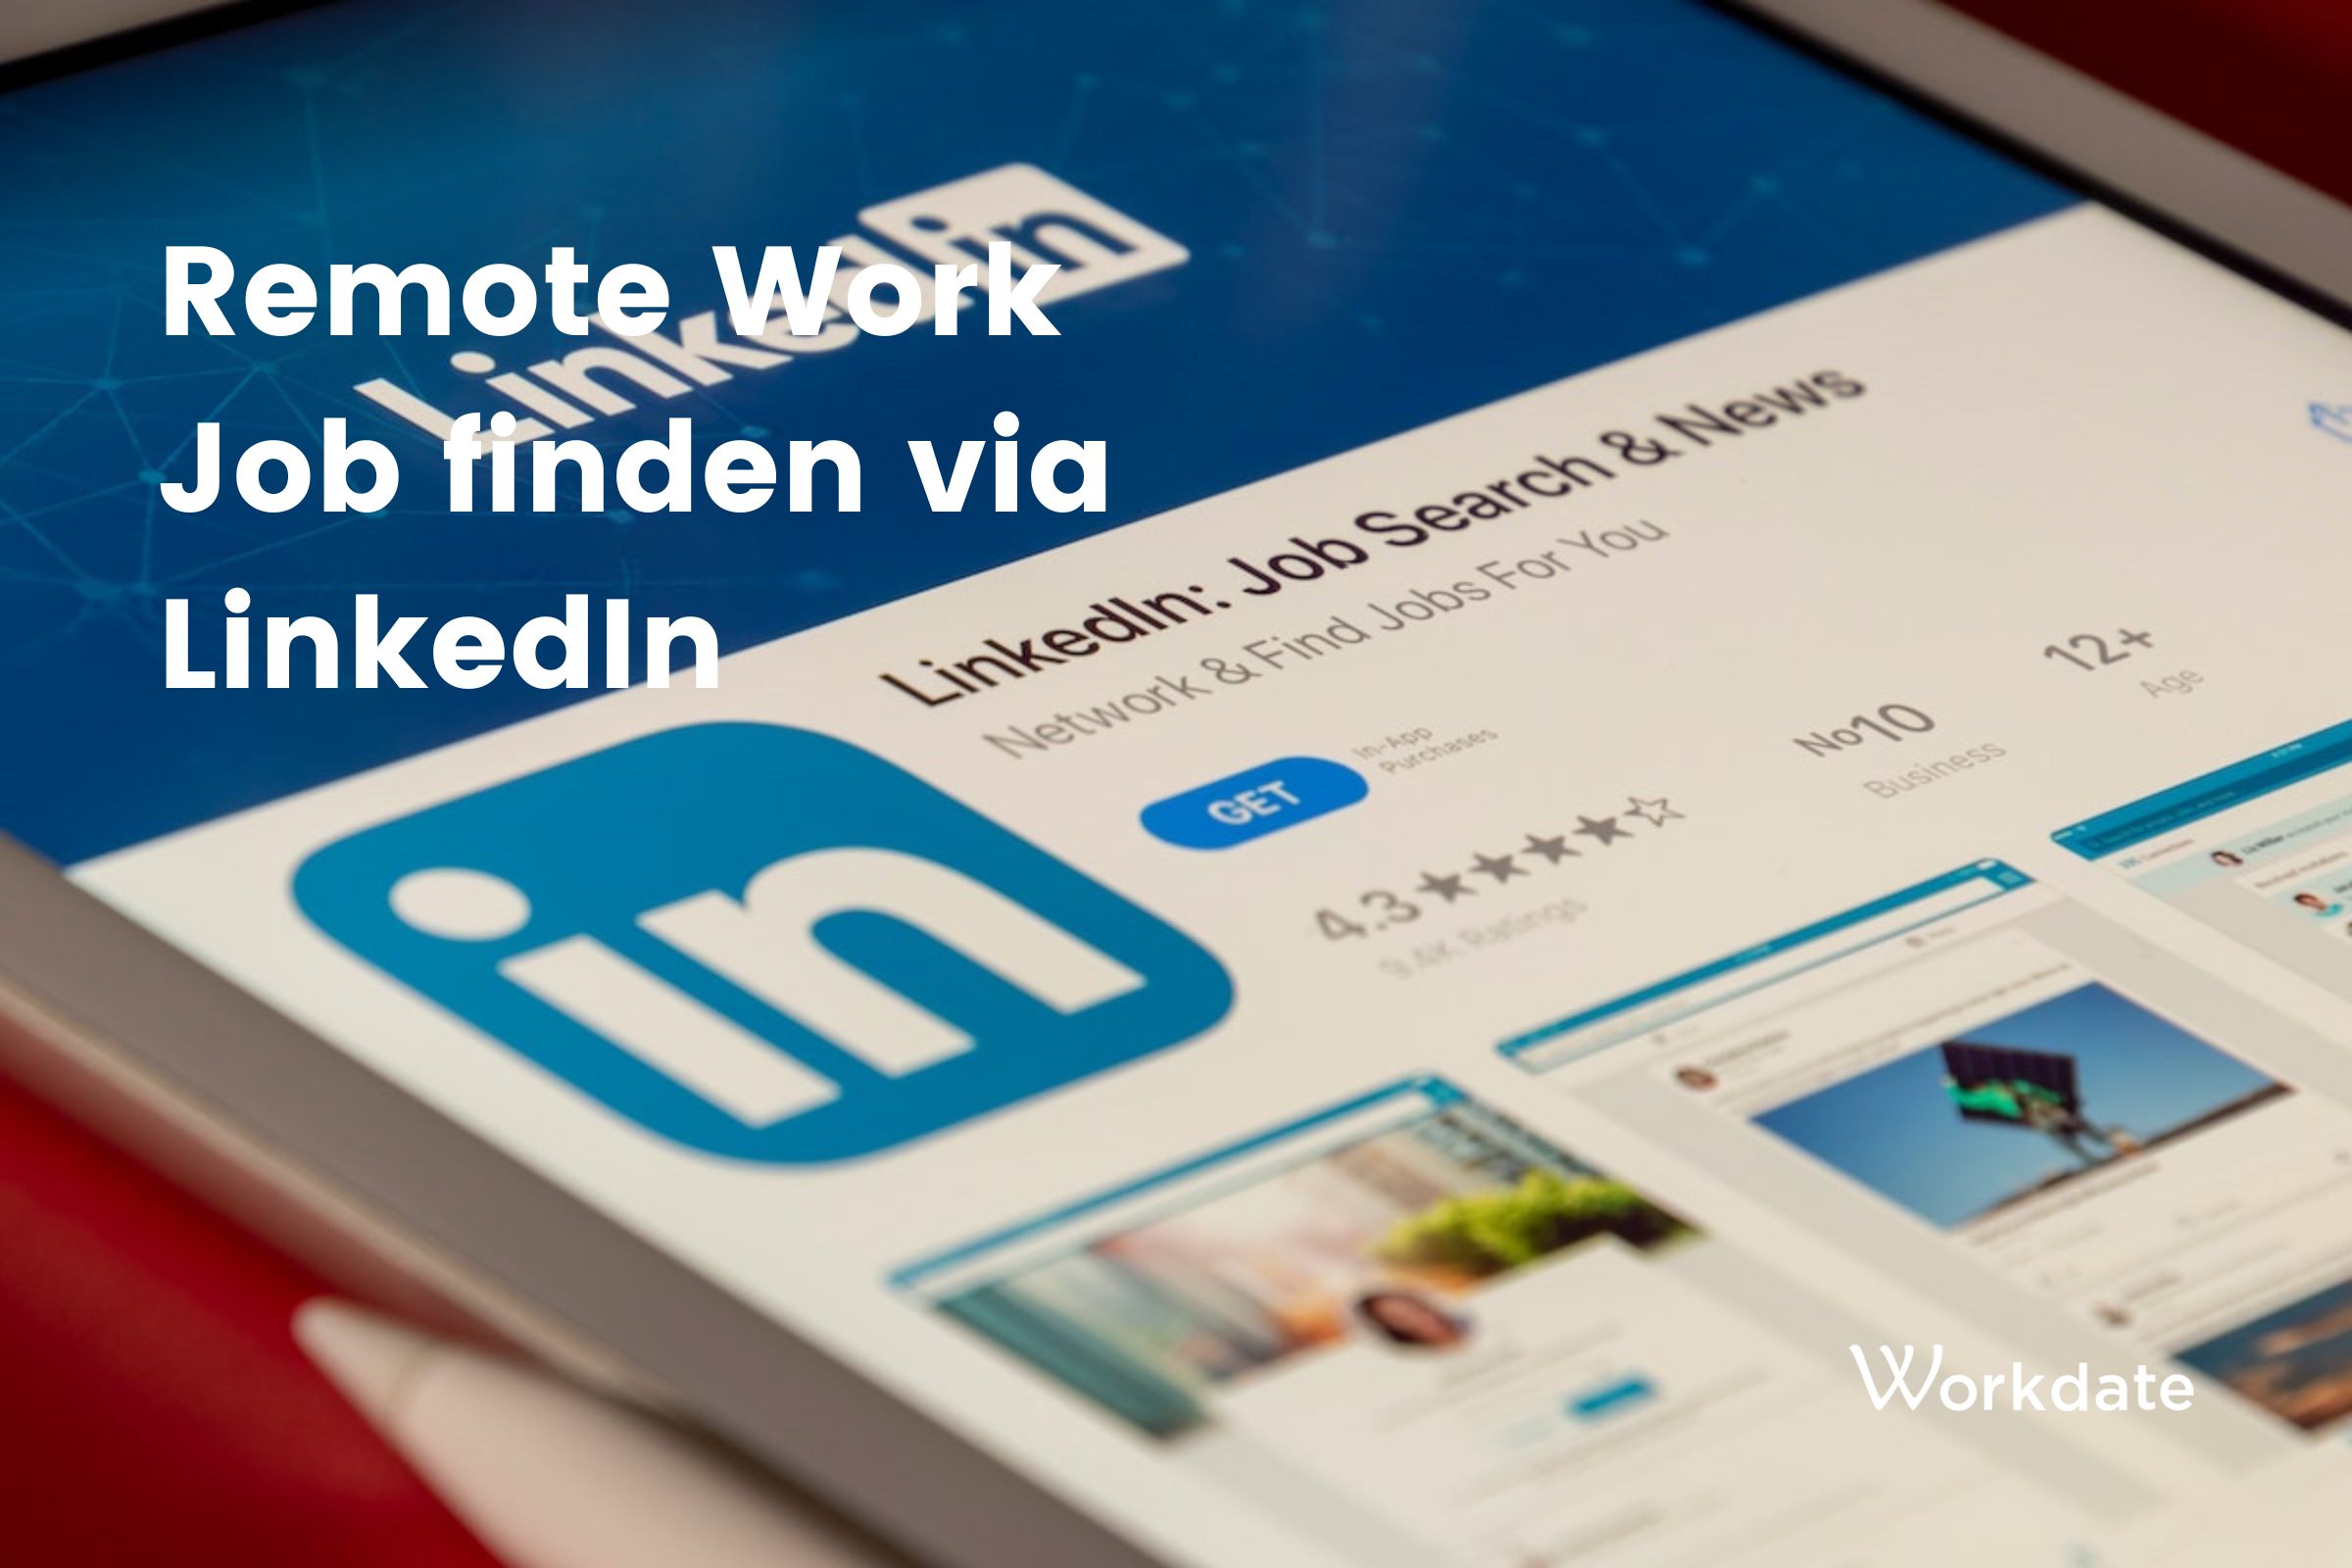 Remote Work Job finden via LinkedIn